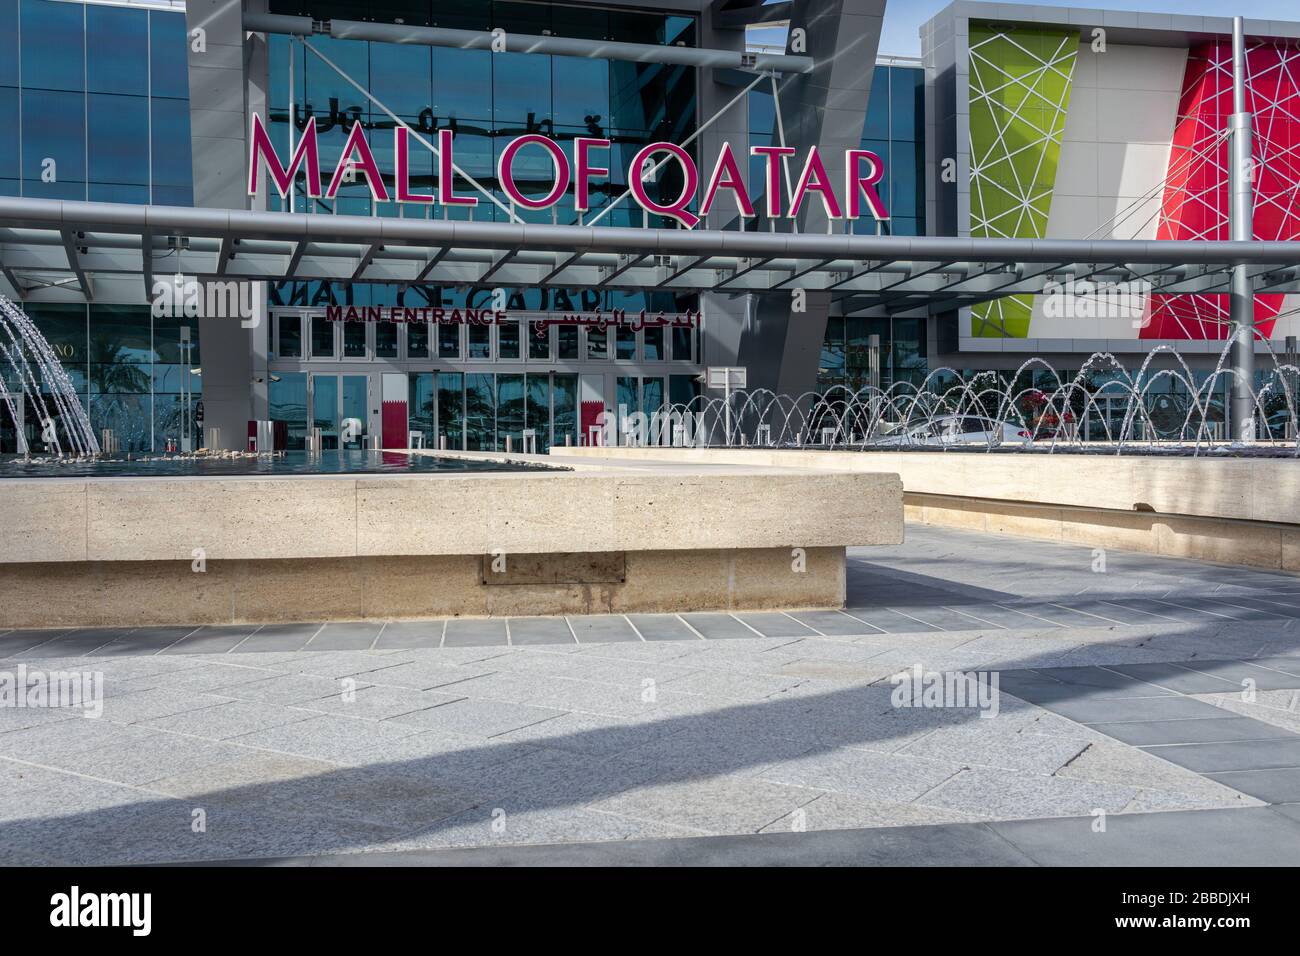 L'entrata principale del Mall of Qatar e' chiusa durante la pandemia di virus Corona con vista del giorno Foto Stock